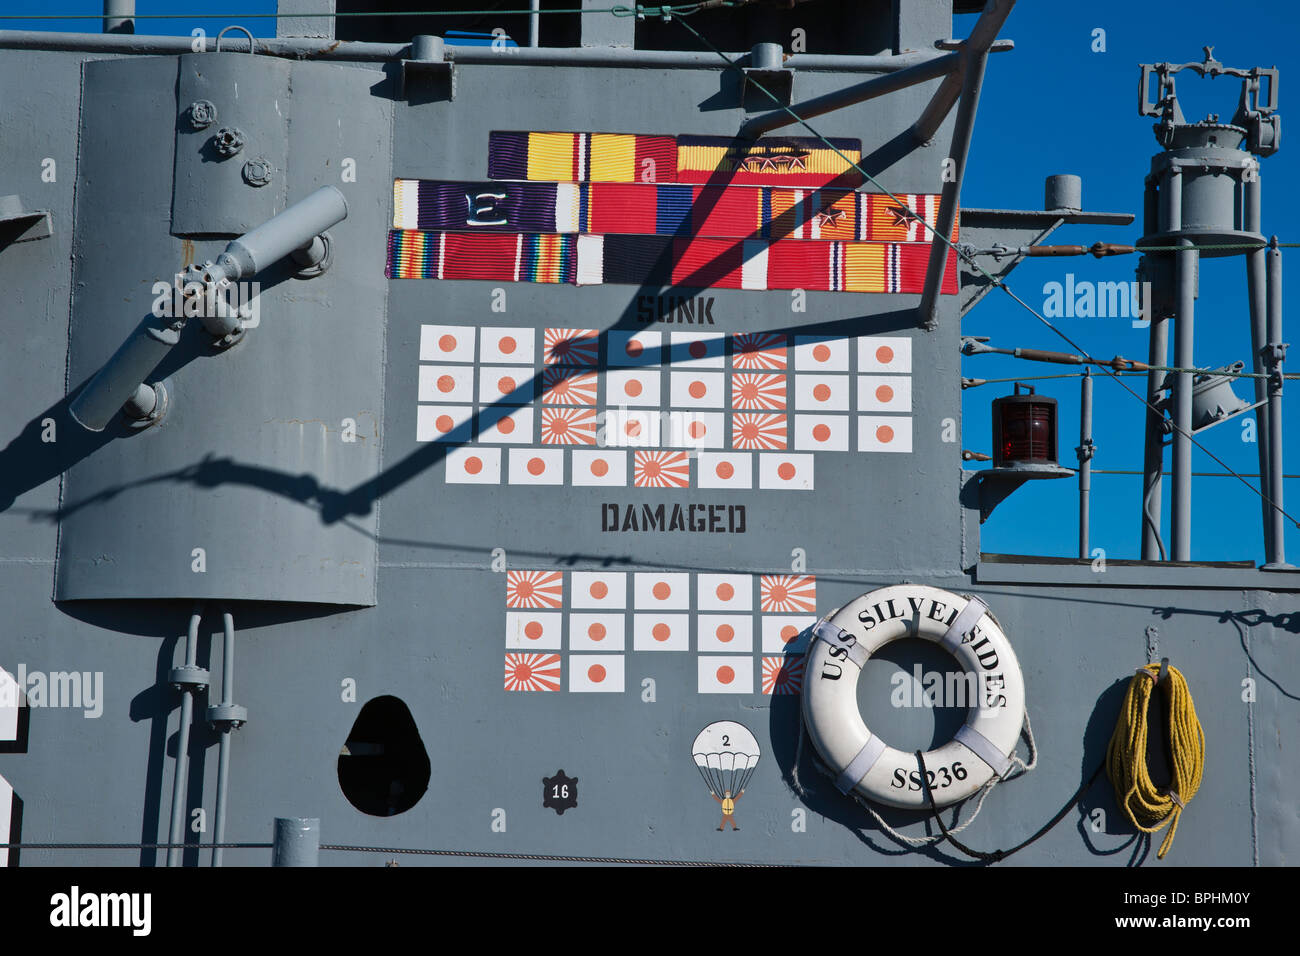 United States Navy seconda guerra mondiale Gato Clash sottomarino USS Silversides in mostra a Muskegon Michigan ad alta risoluzione Foto Stock